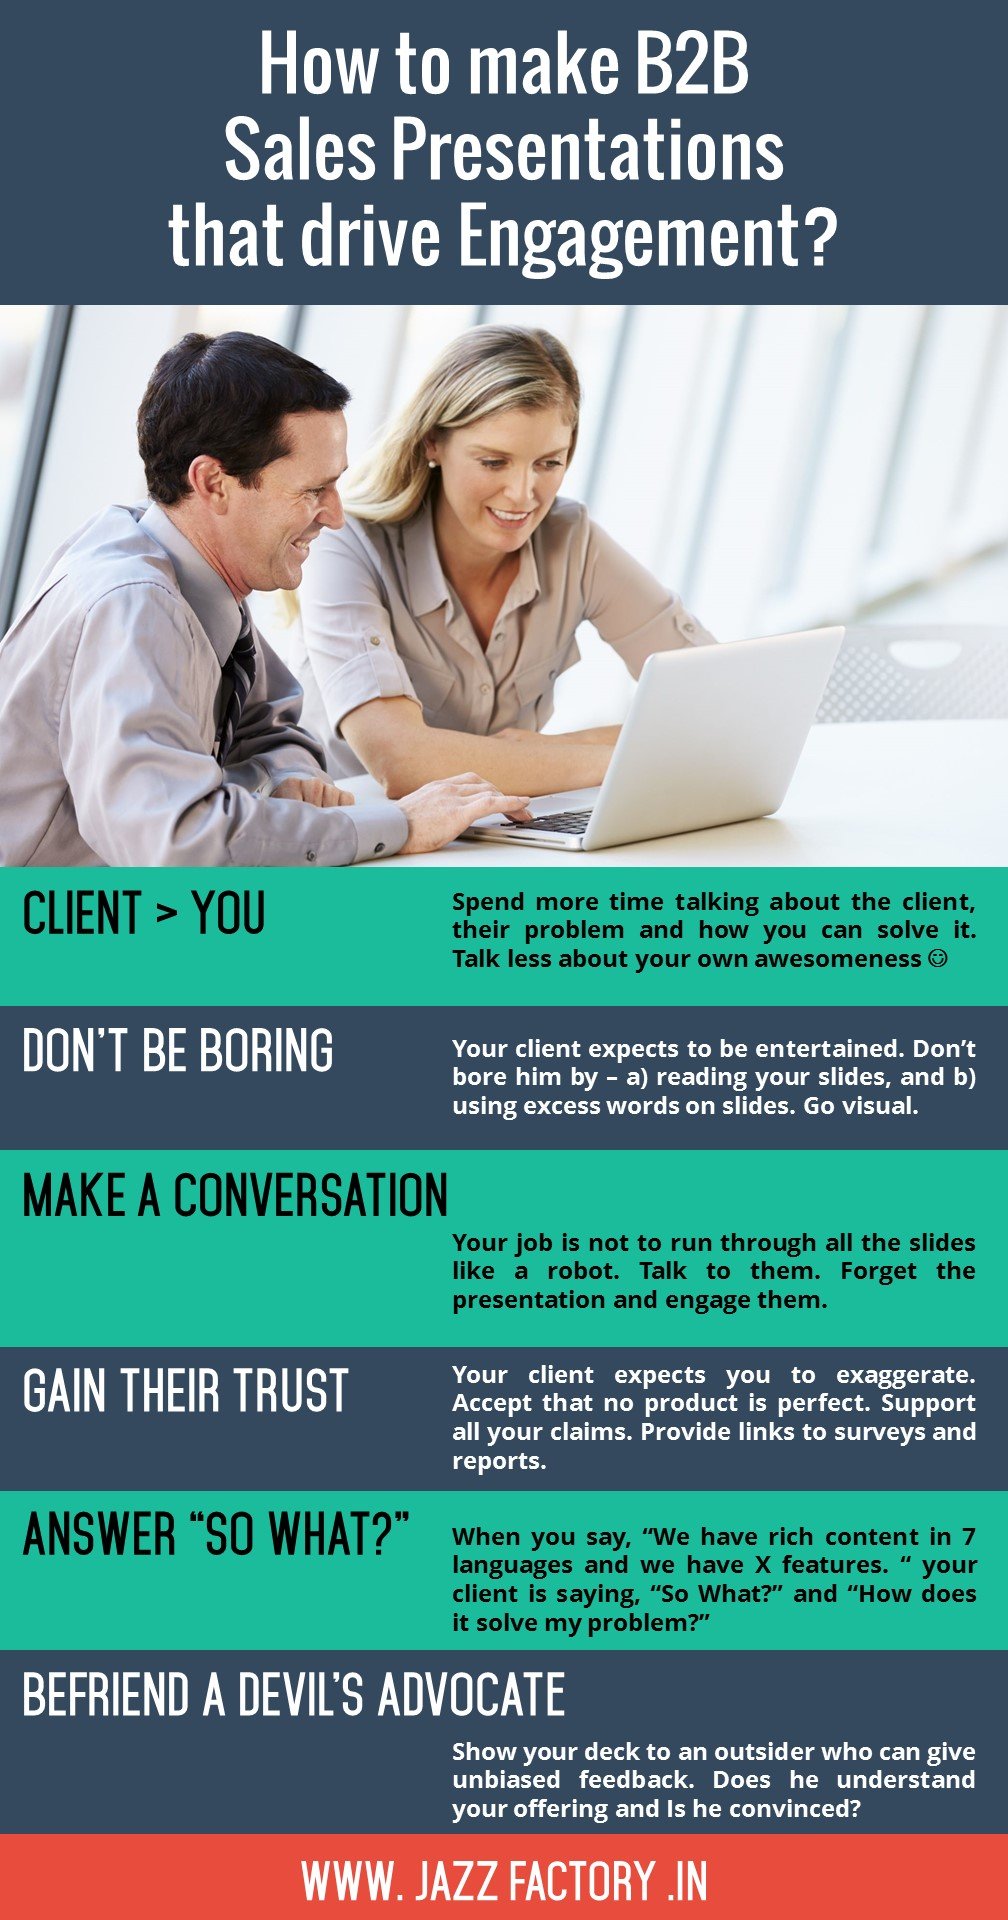 tips for effective sales presentation